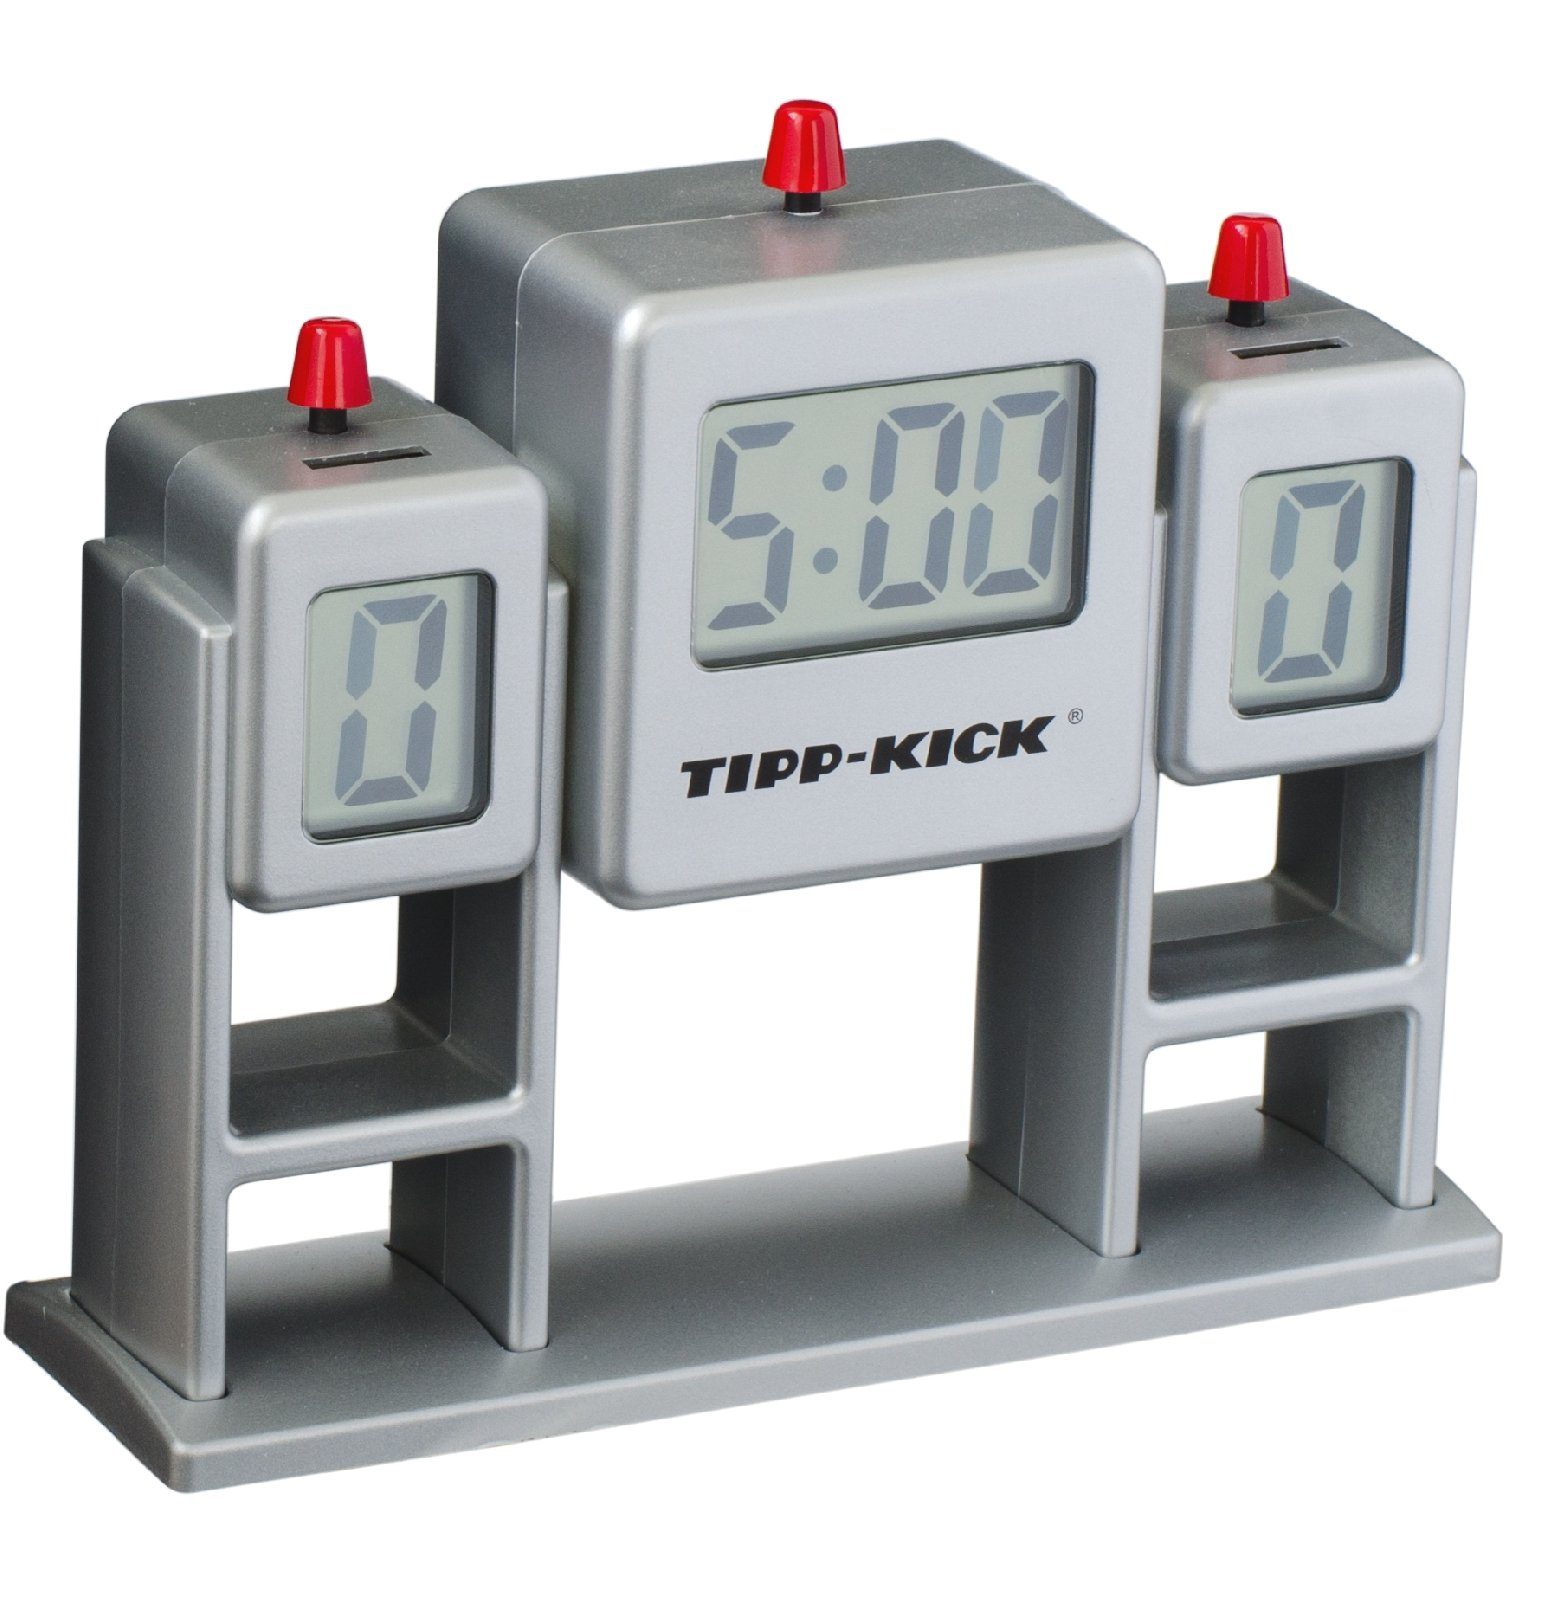 Sound Kick Zeitanzeige Tip Uhr Match Halbzeituhr Tipp-Kick Tischfußballspiel Spiel Stoppuhr